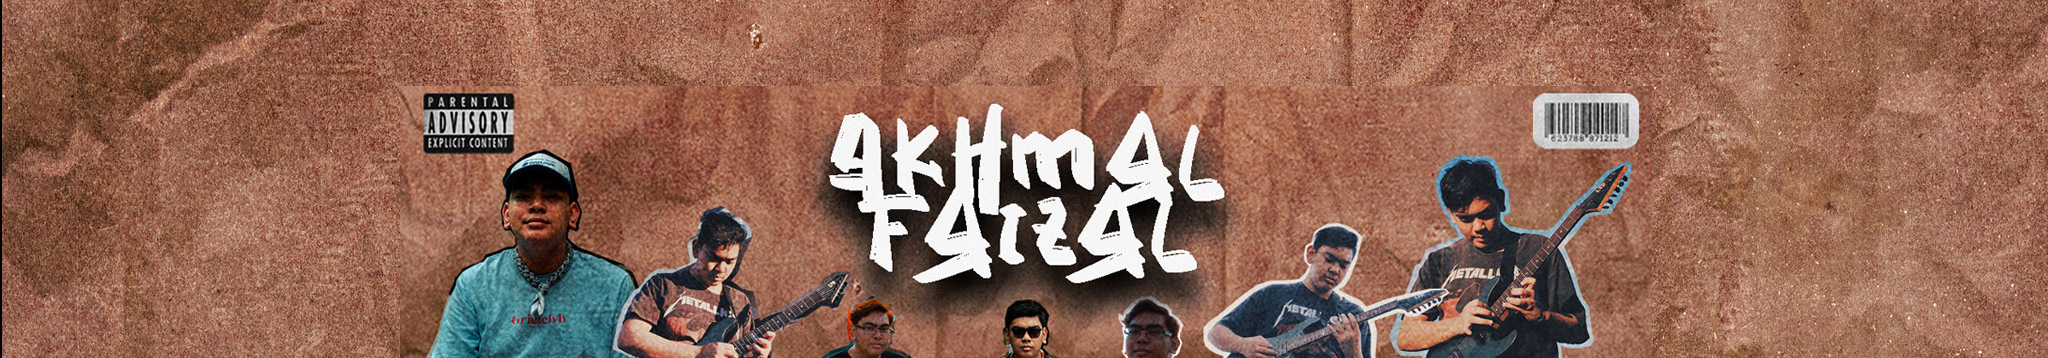 Akhmal Faizal's profile banner